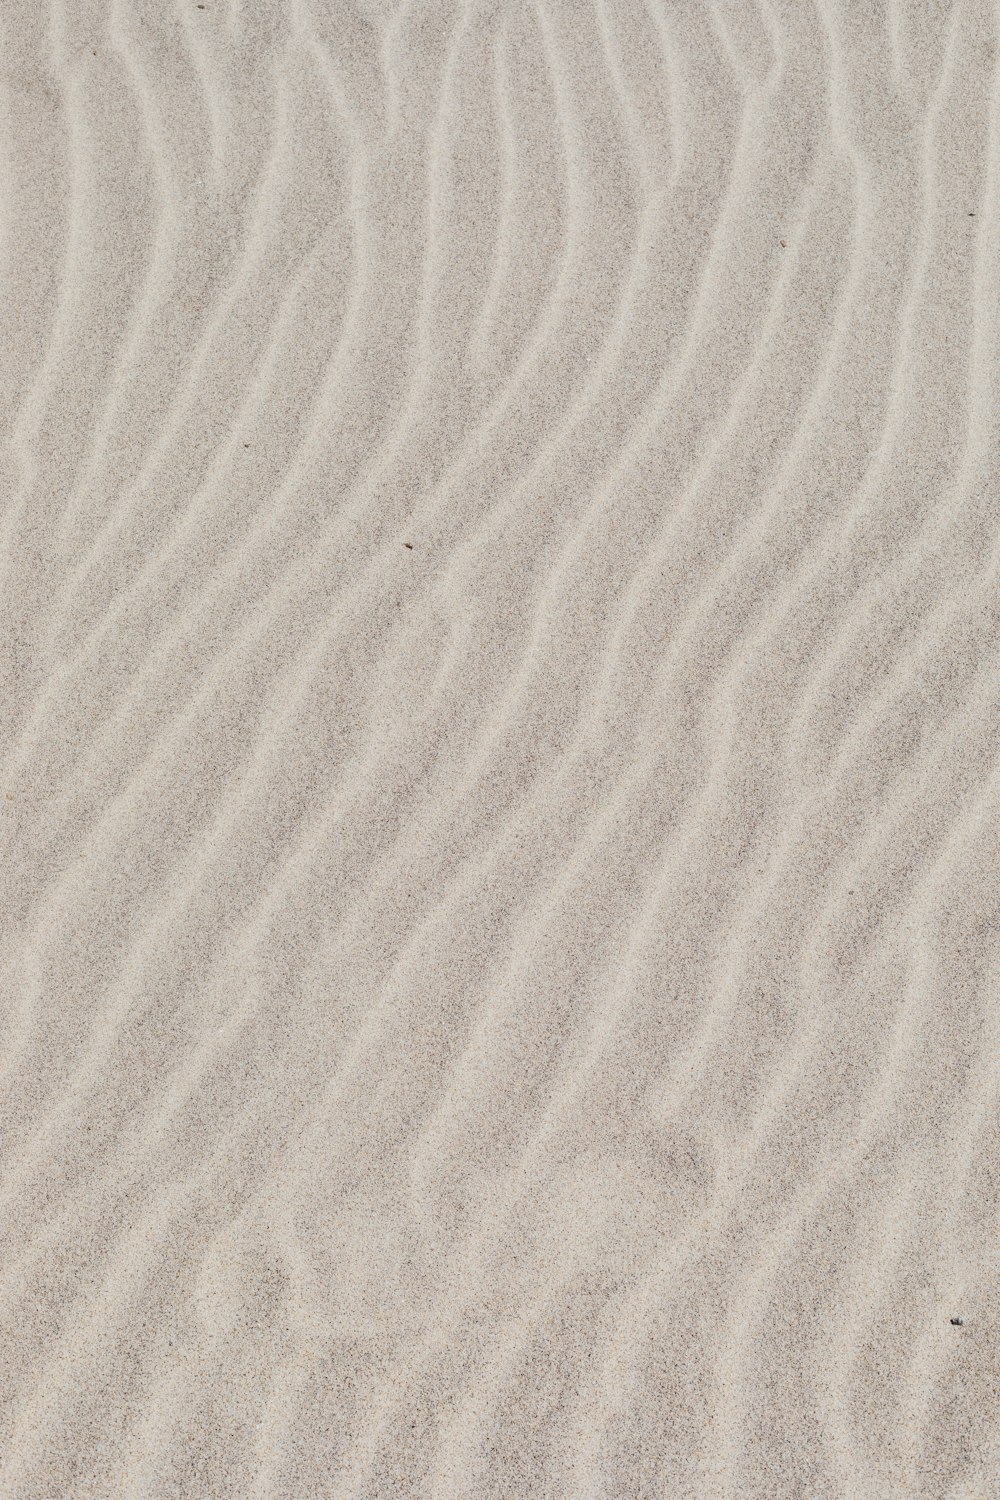 weißer Sand mit Schatten der Person